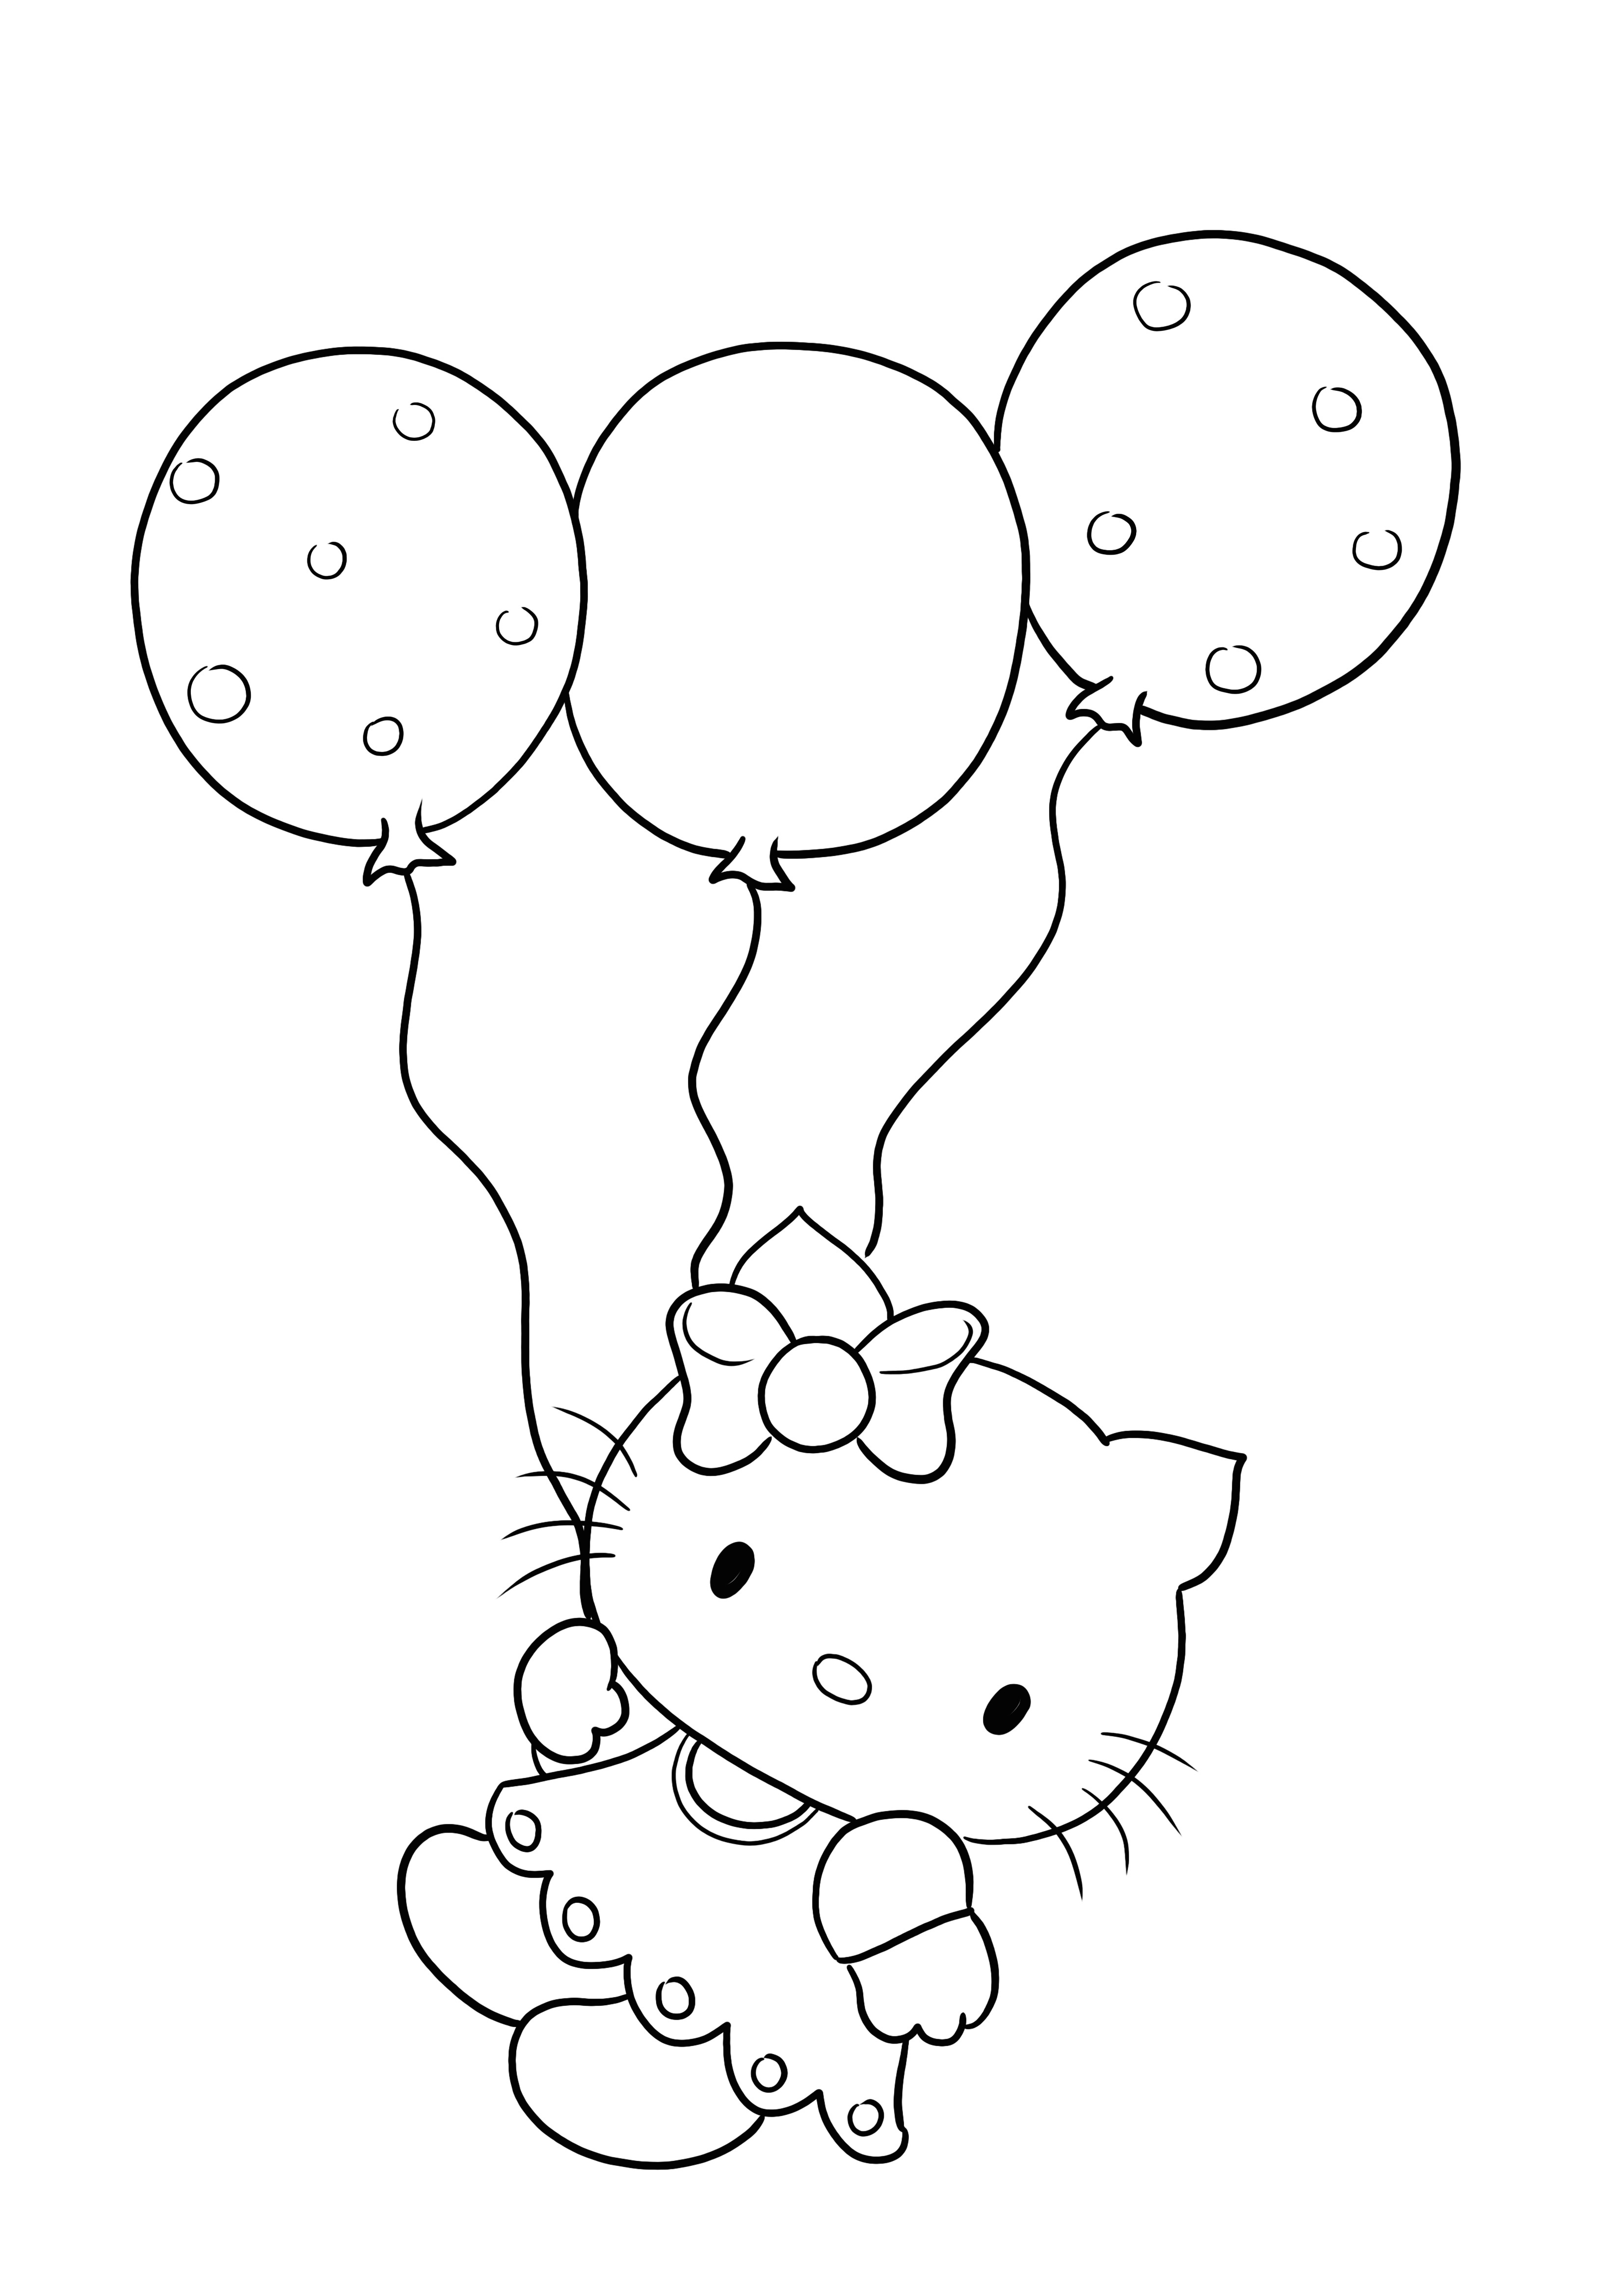 Hello Kitty e balões para imprimir e colorir grátis para crianças